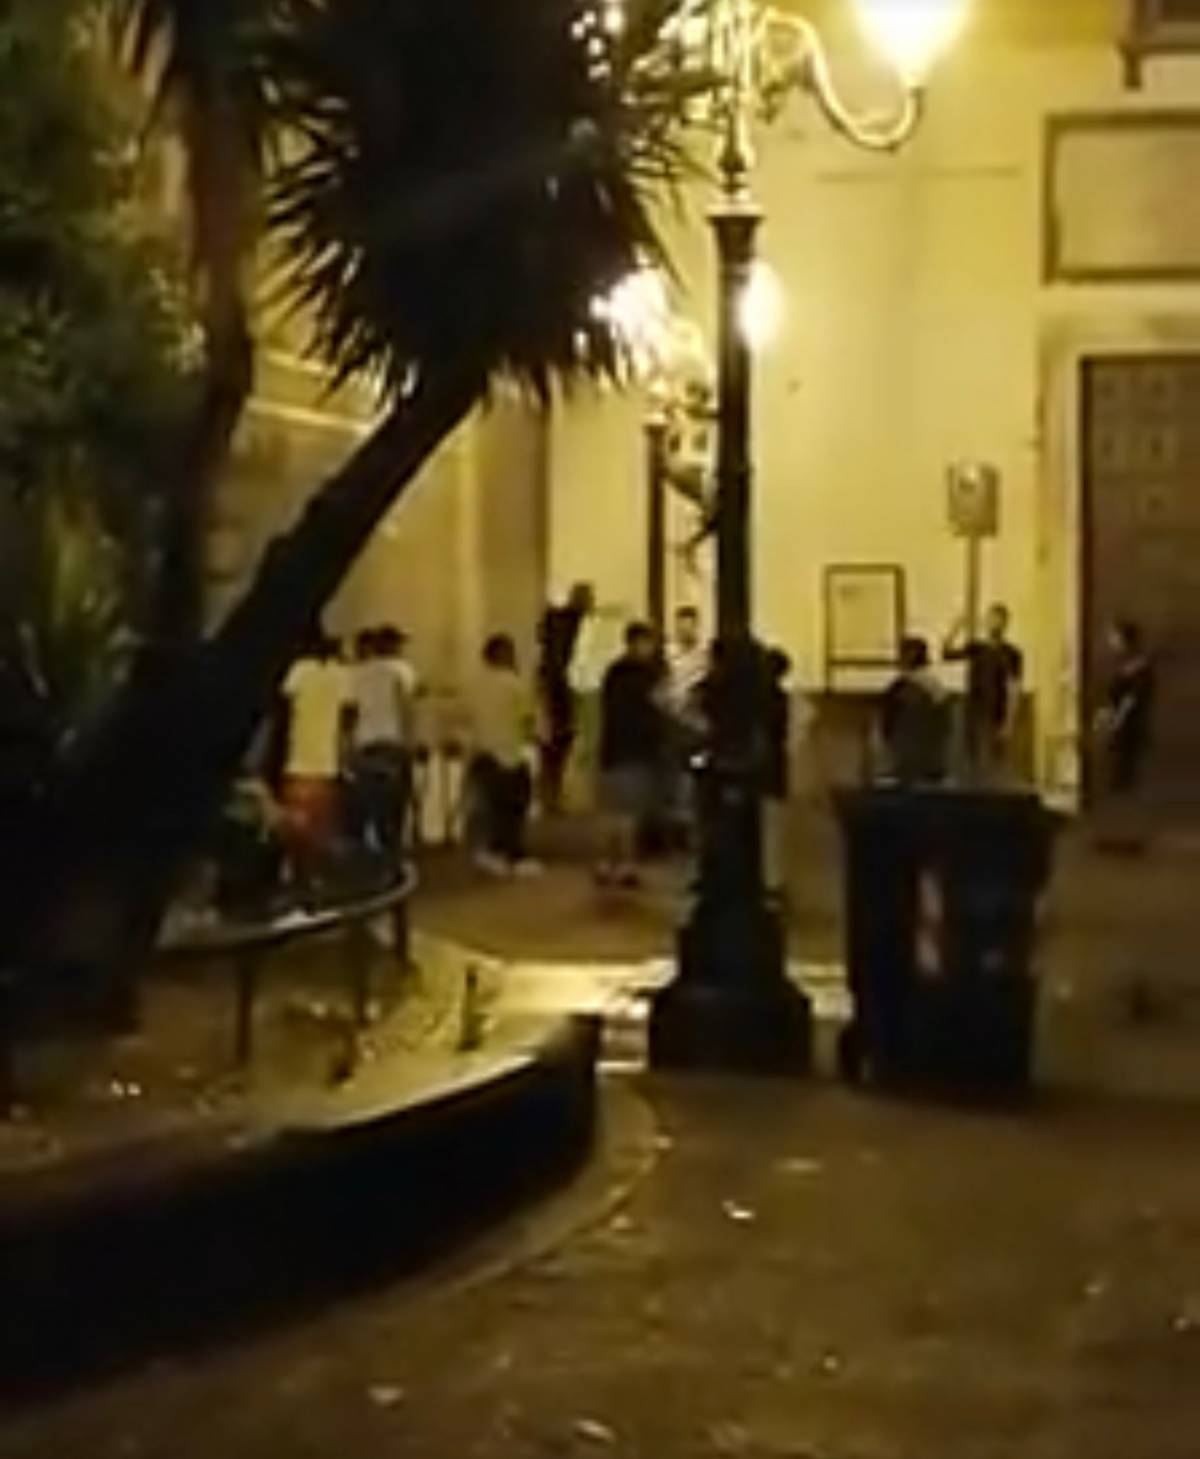 Napoli, baby gang scatenata mette in fuga i passati con urla e atti vandalici